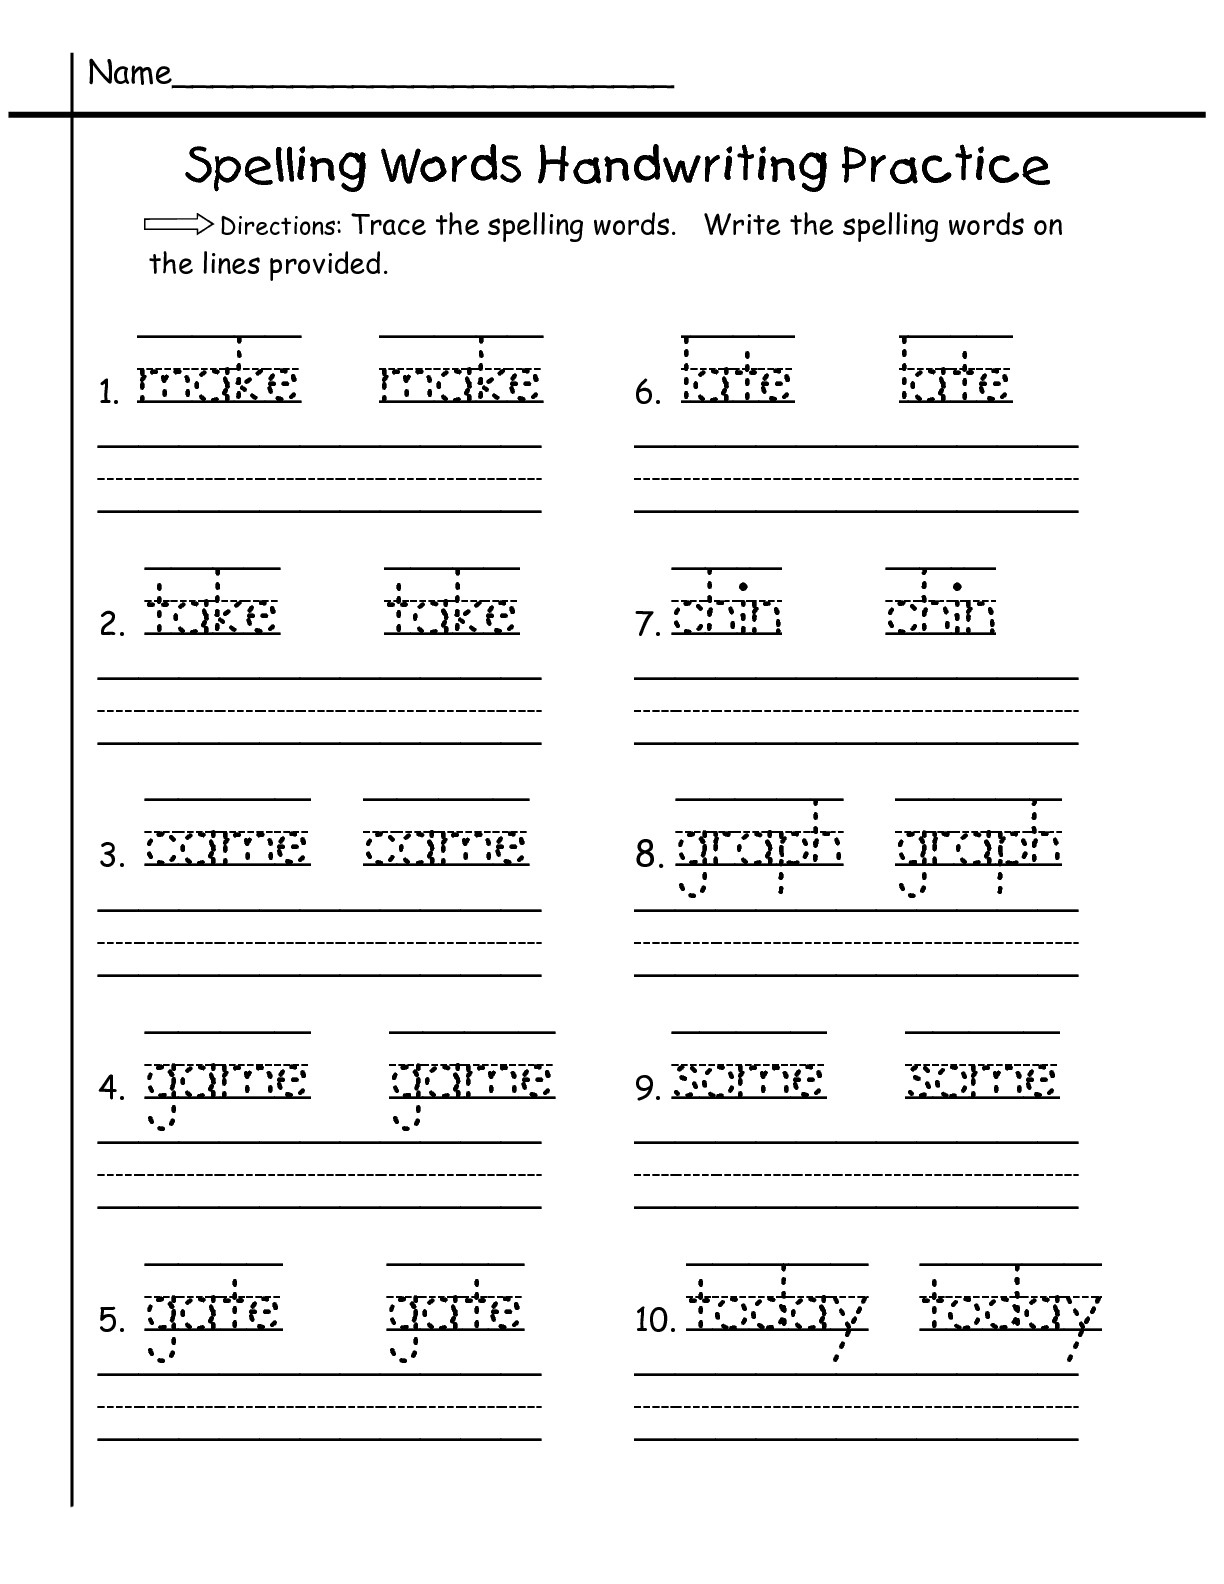 12-free-printable-spelling-test-worksheets-worksheeto